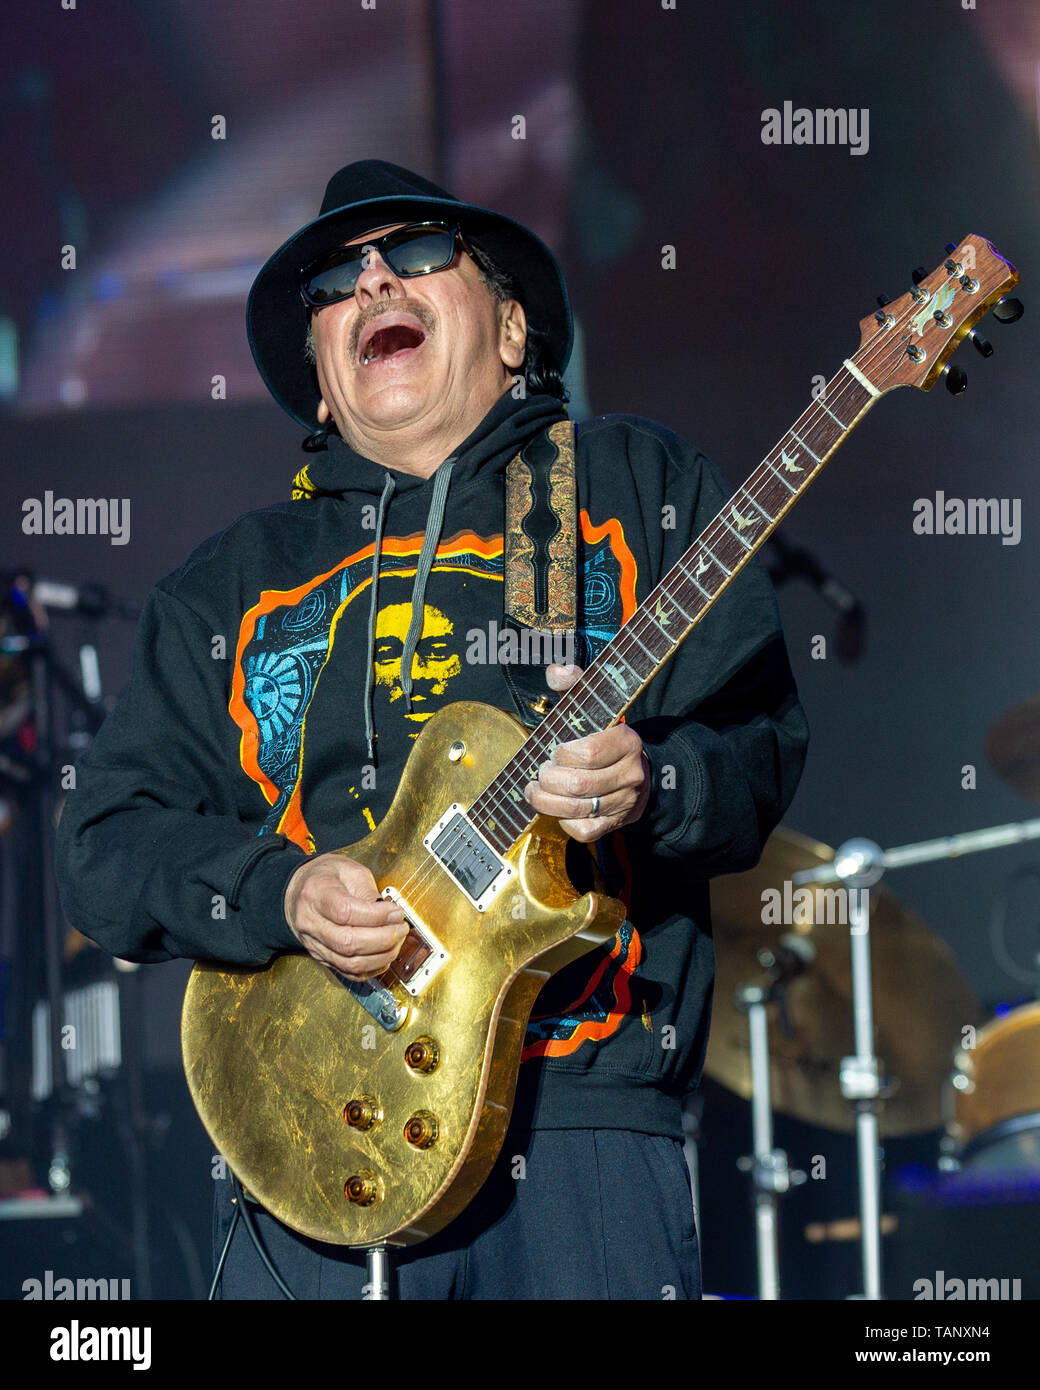 26 mai 2019 - Napa, Californie, États-Unis - Carlos Santana au cours de l'BottleRock Music Festival à Napa, Californie (crédit Image : © Daniel DeSlover/Zuma sur le fil) Banque D'Images